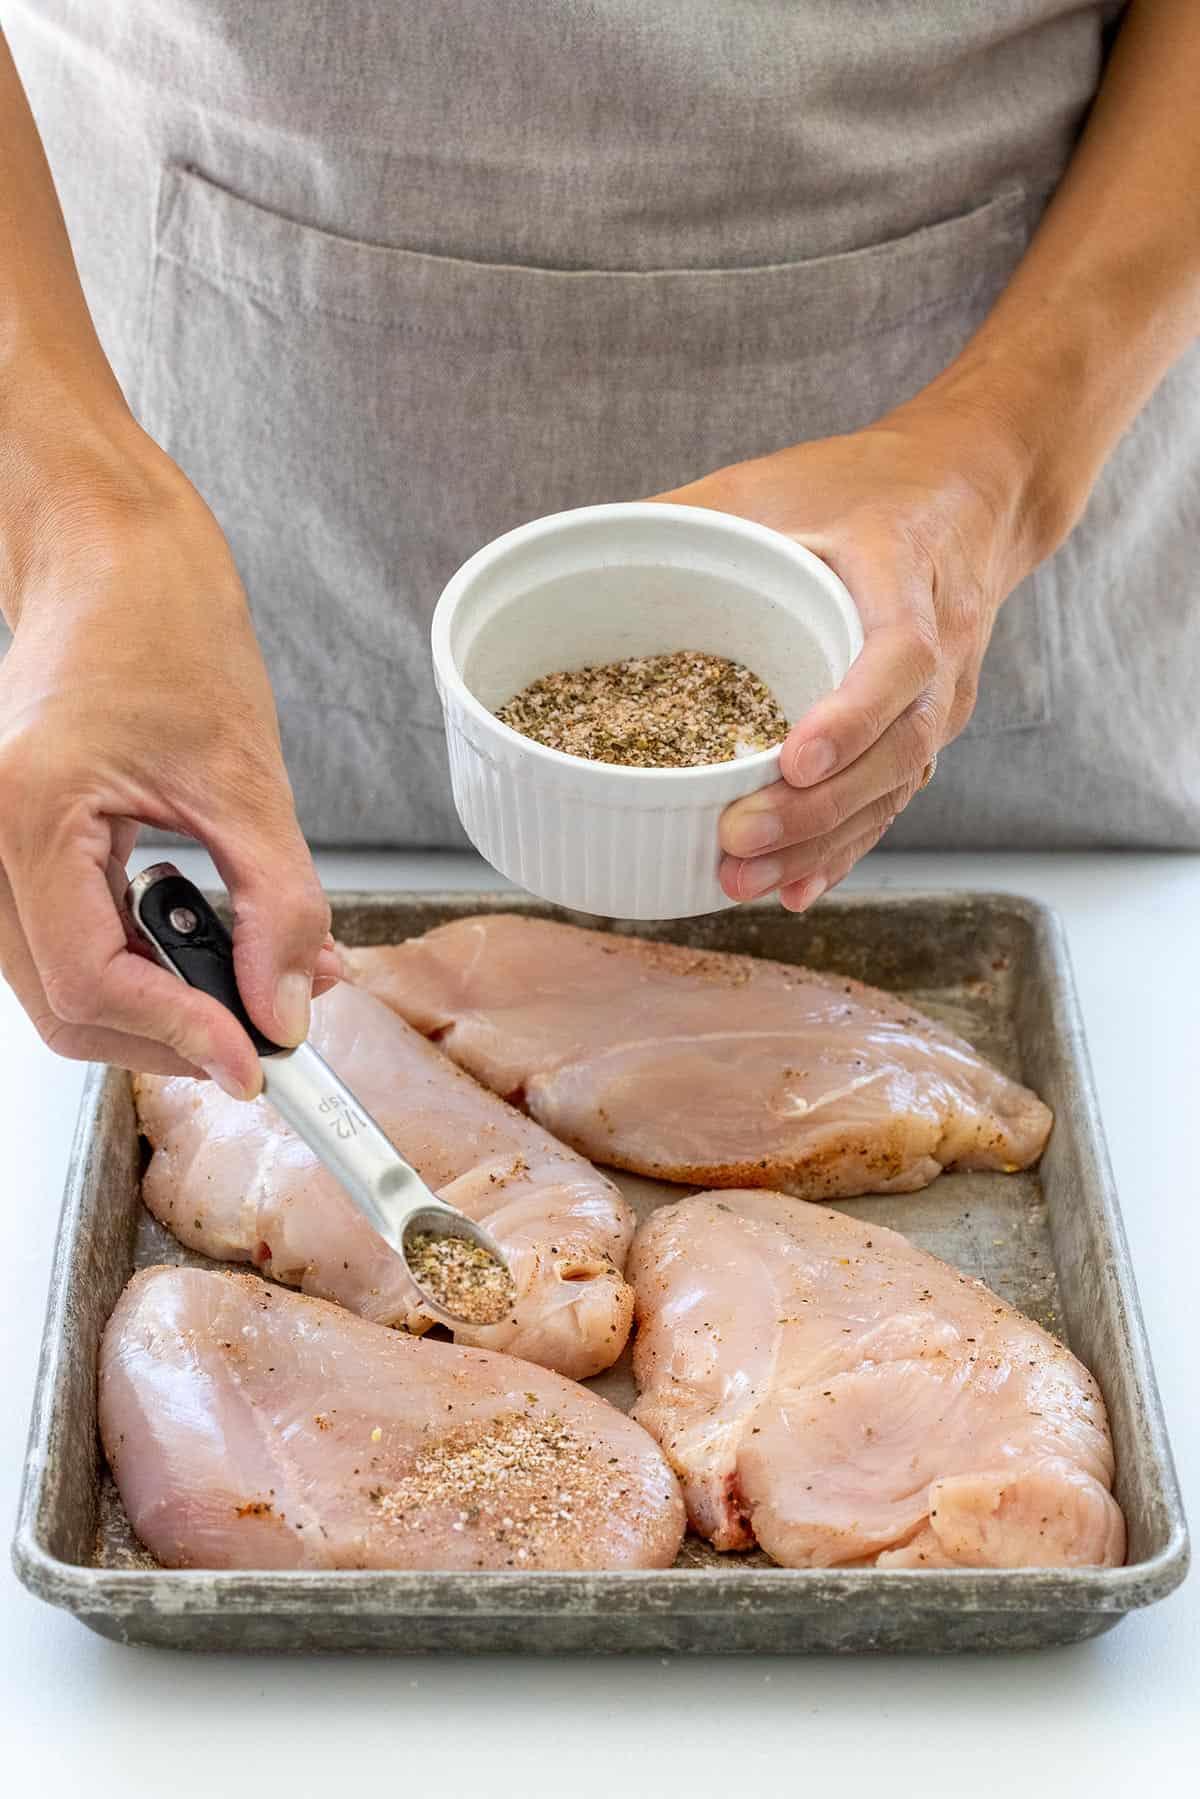 Sprinkling dried seasonings over chicken breasts